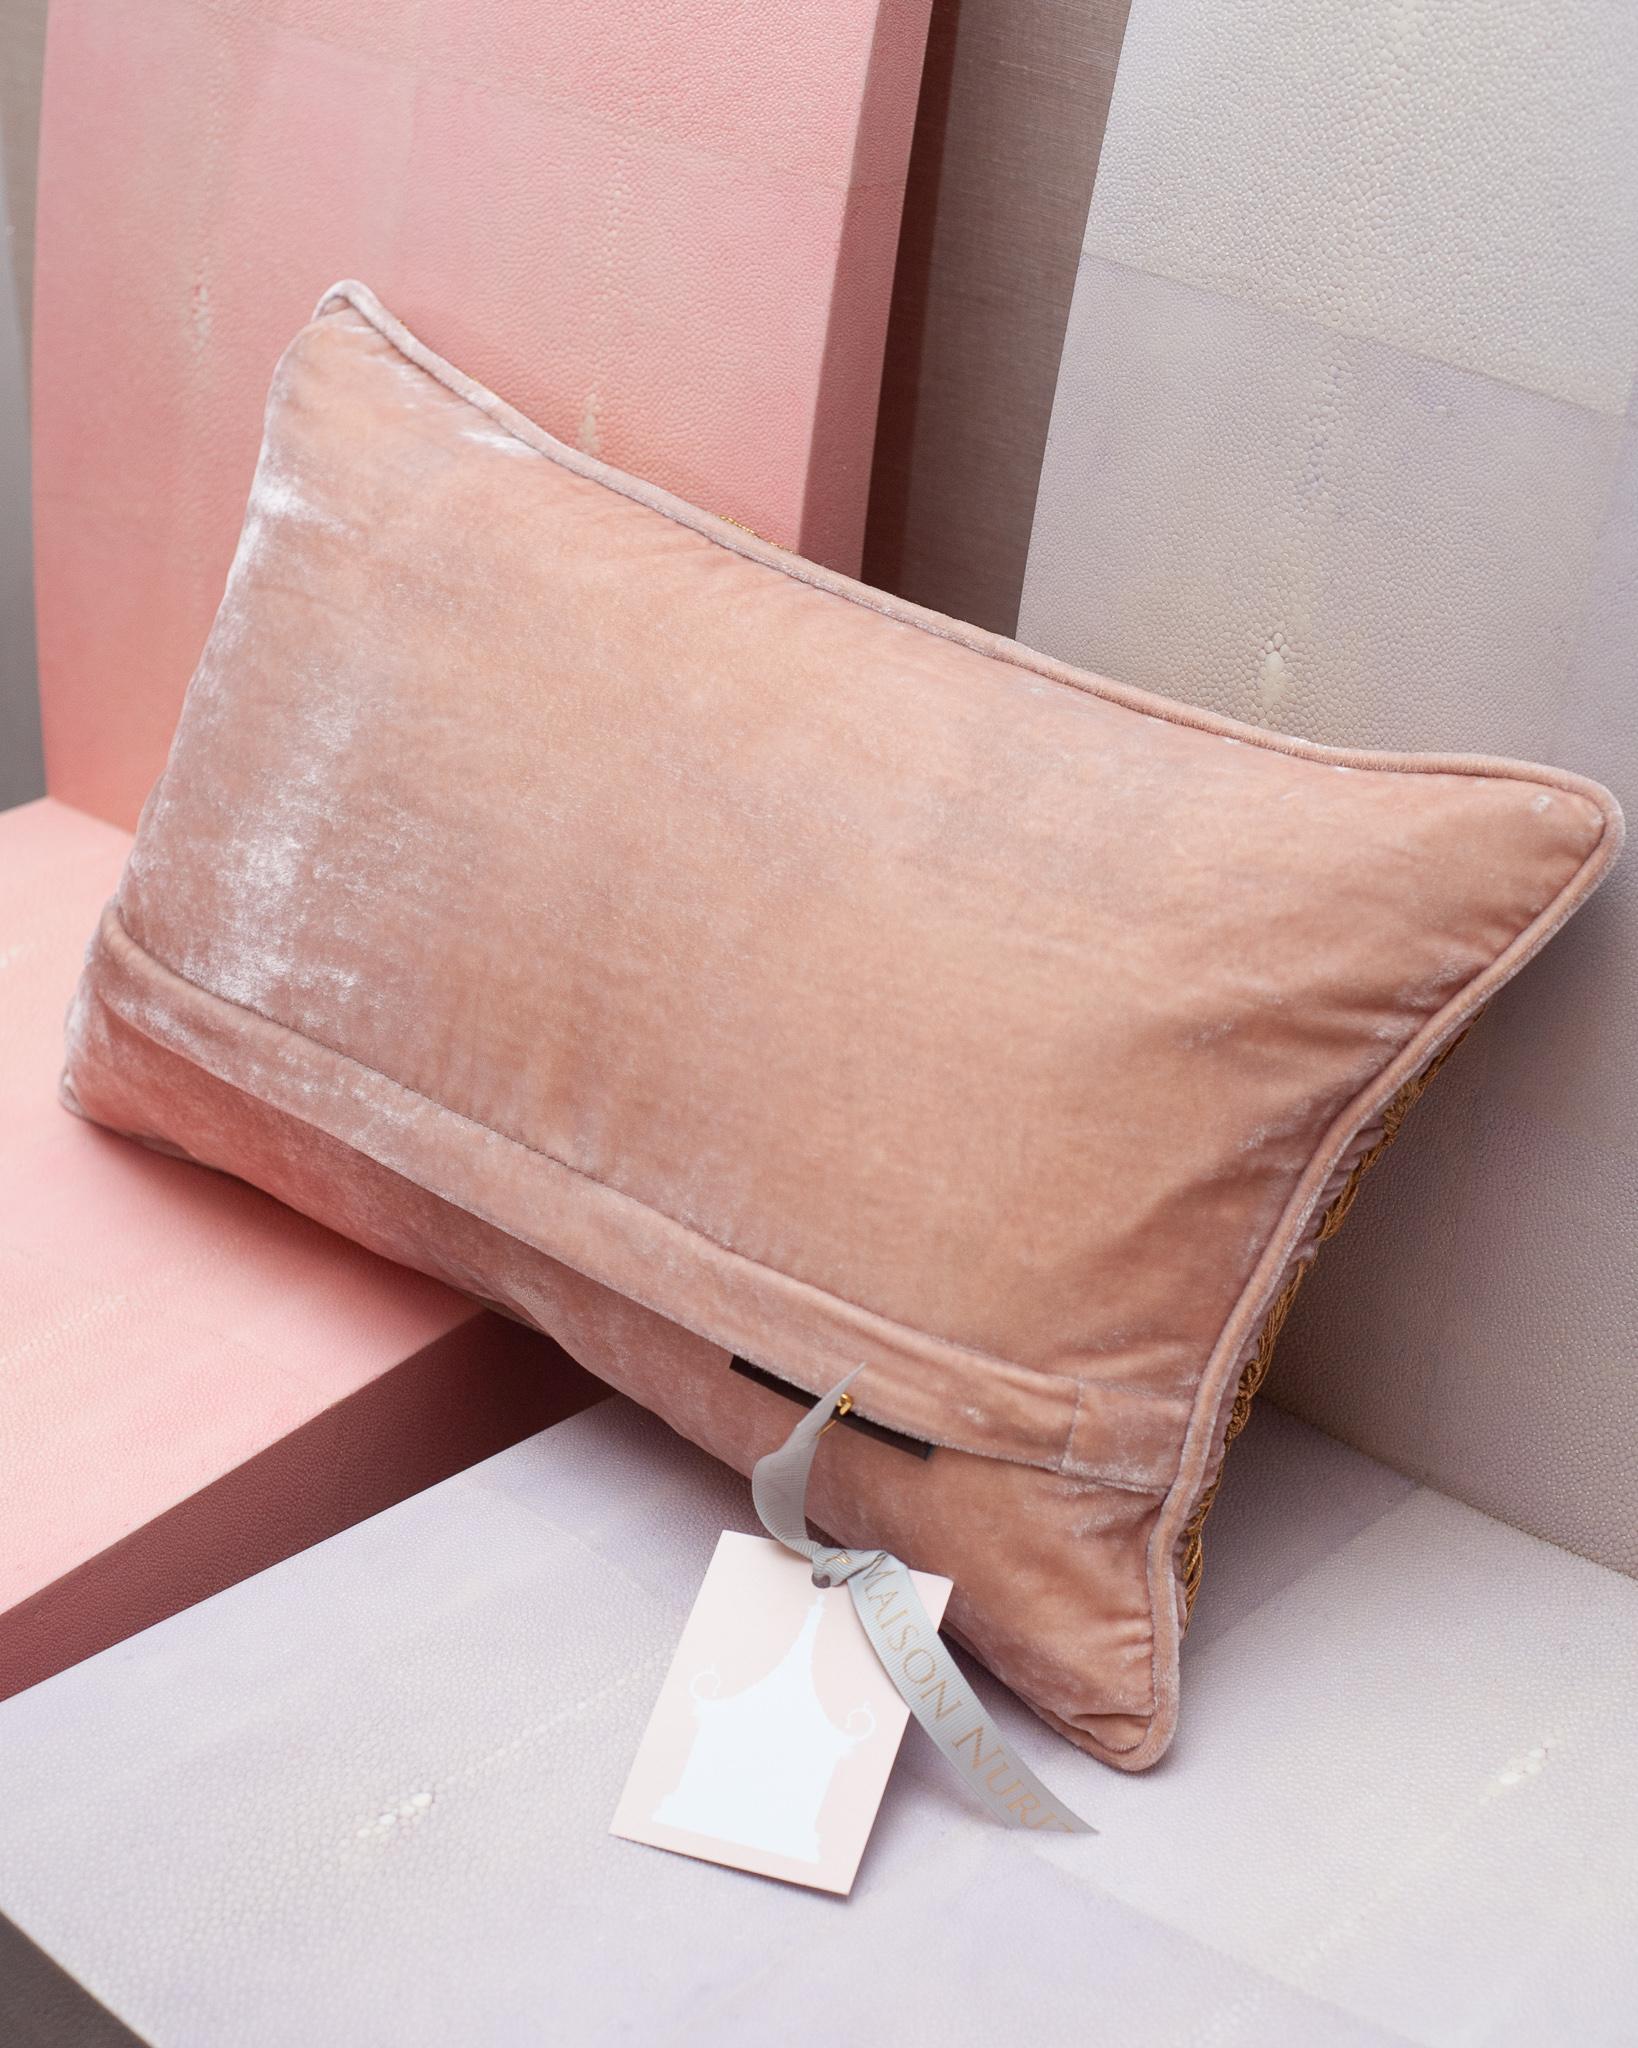 contemporary decorative pillows